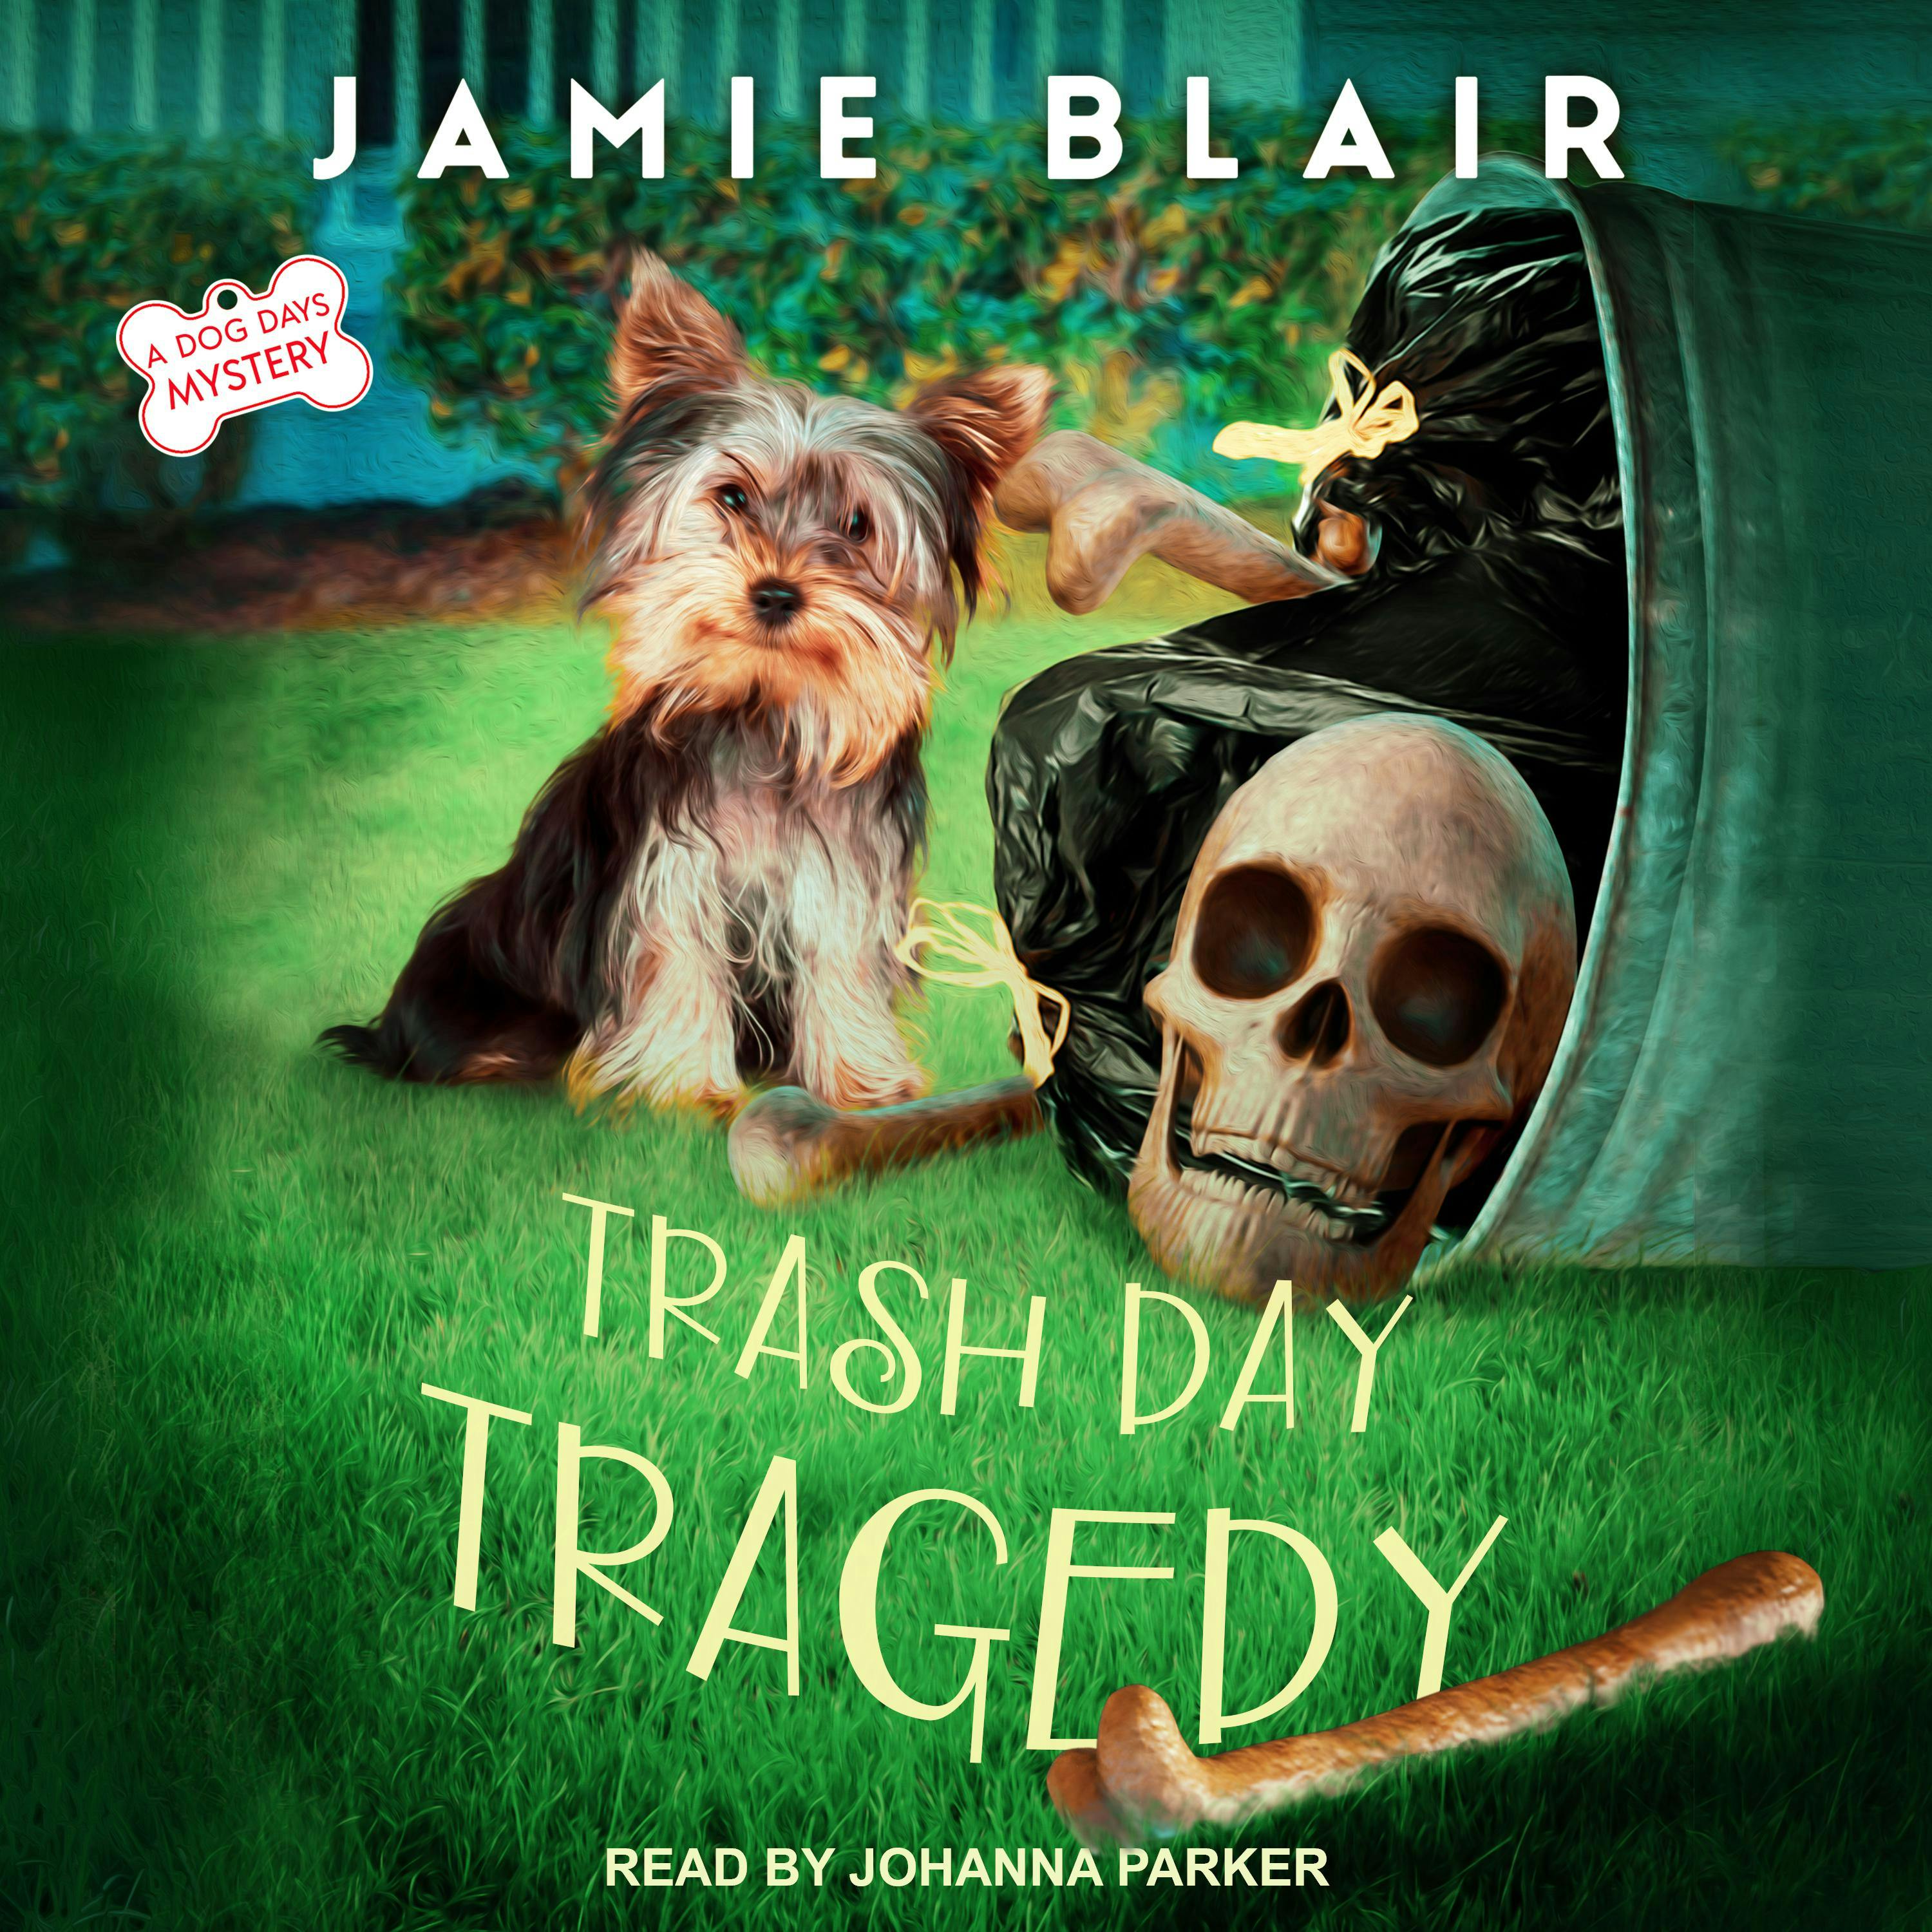 Trash Day Tragedy: A Dog Days Mystery - Jamie Blair